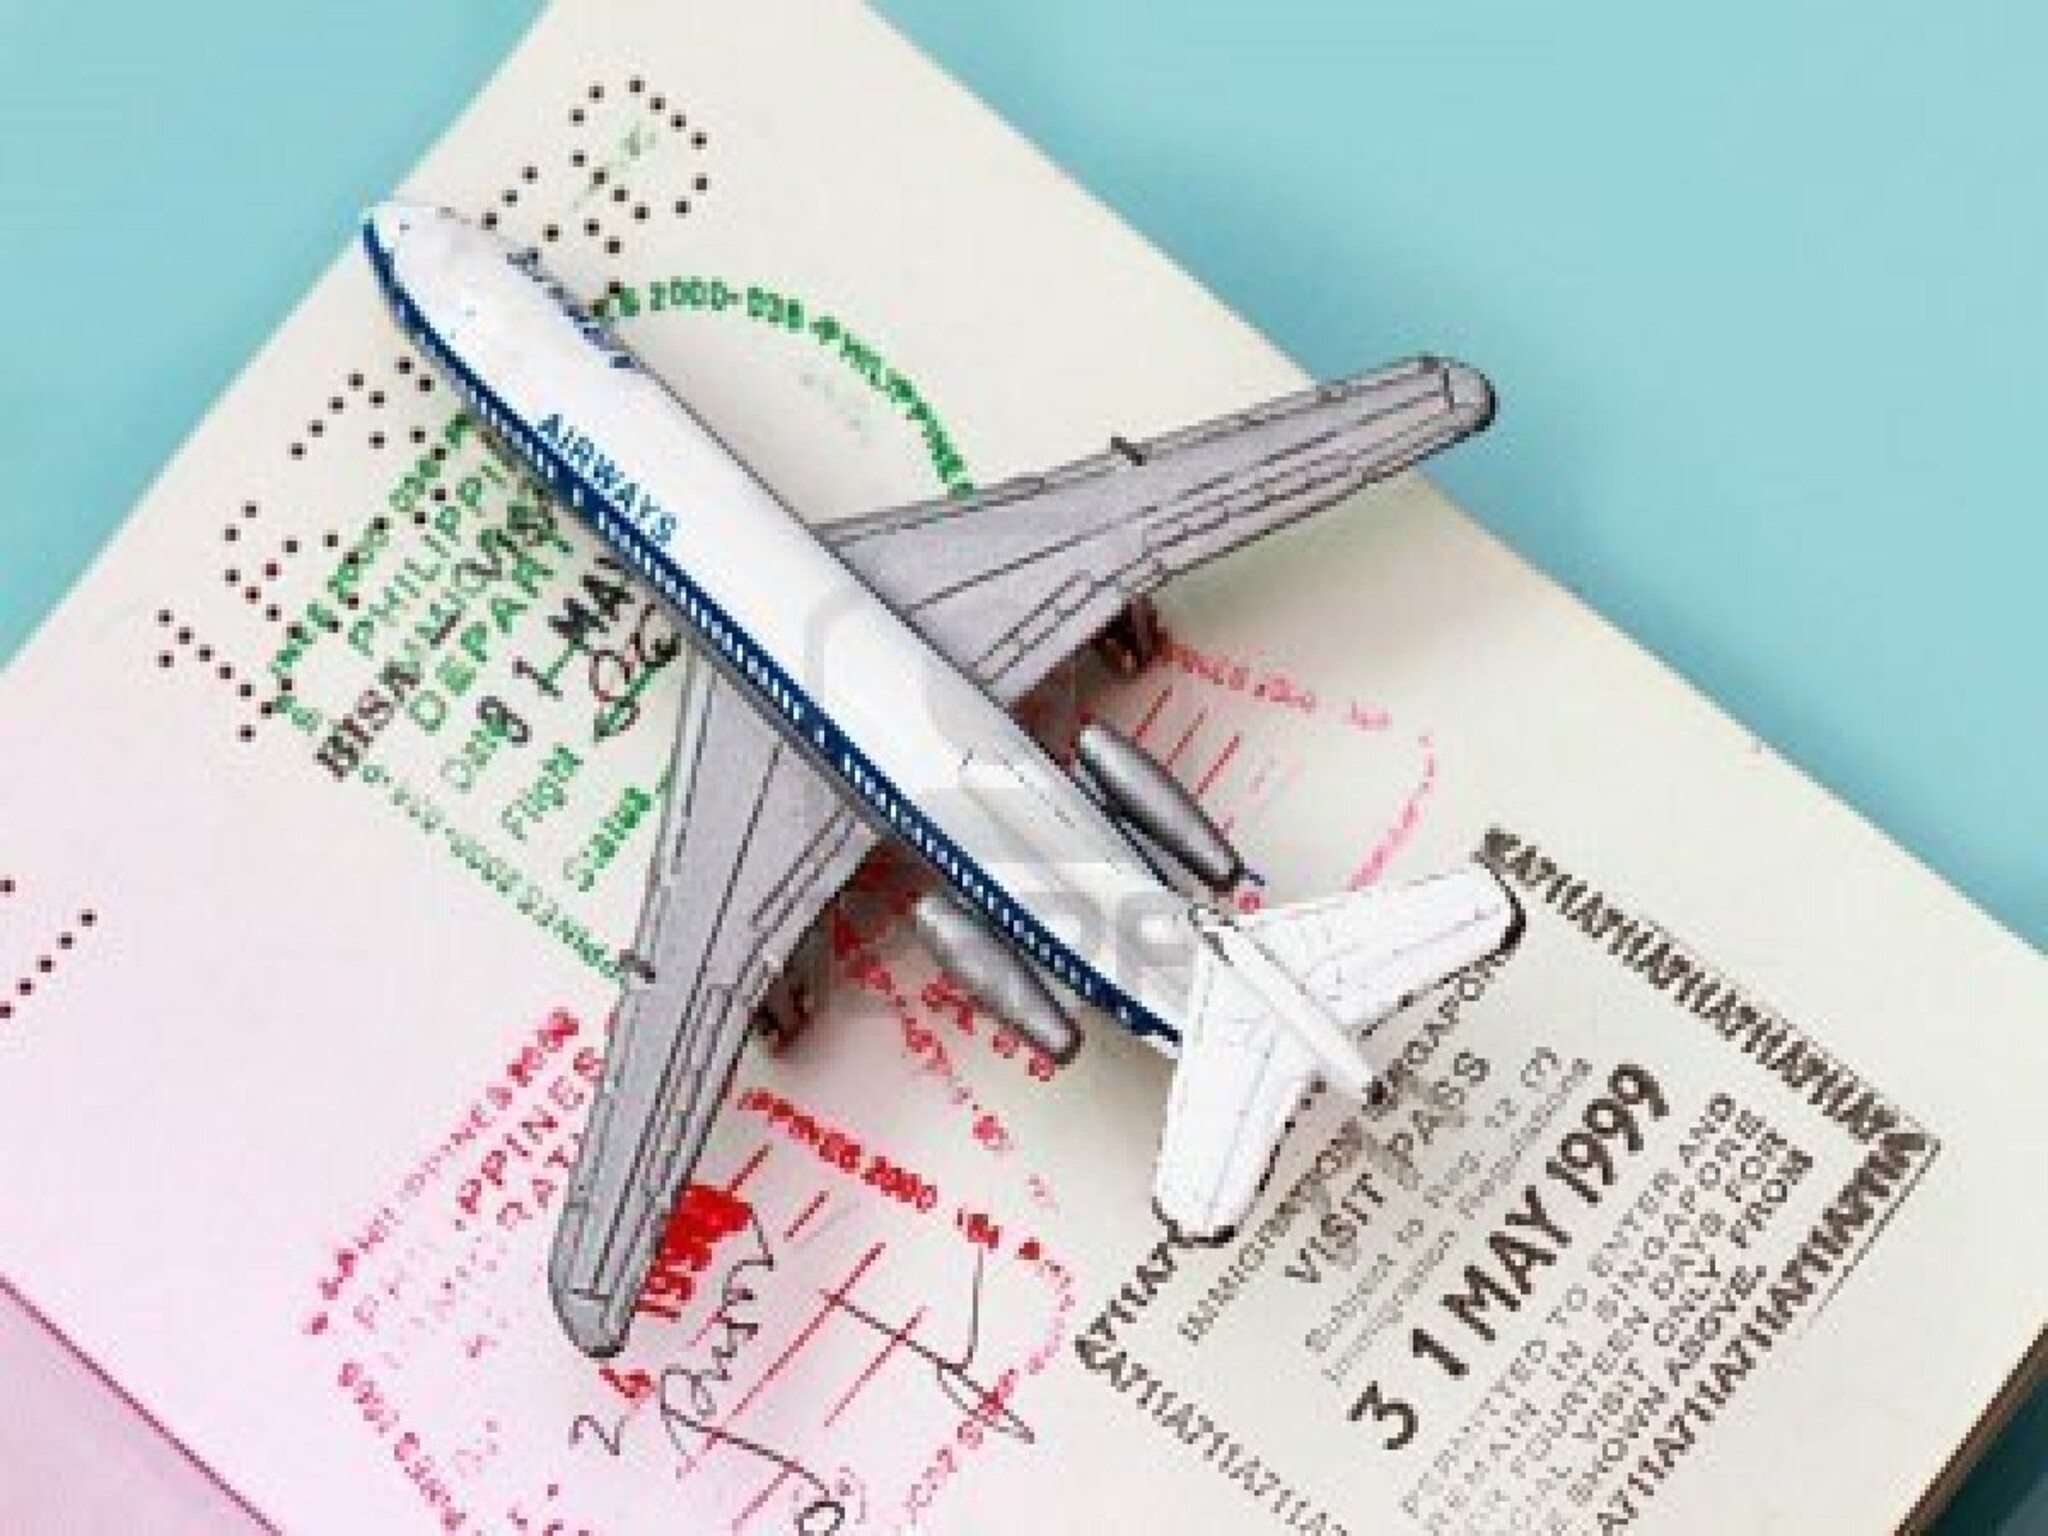 ٧ وجهات يمكن للمقيمين في الإمارات السفر إليها بدون تأشيرة مسبقة